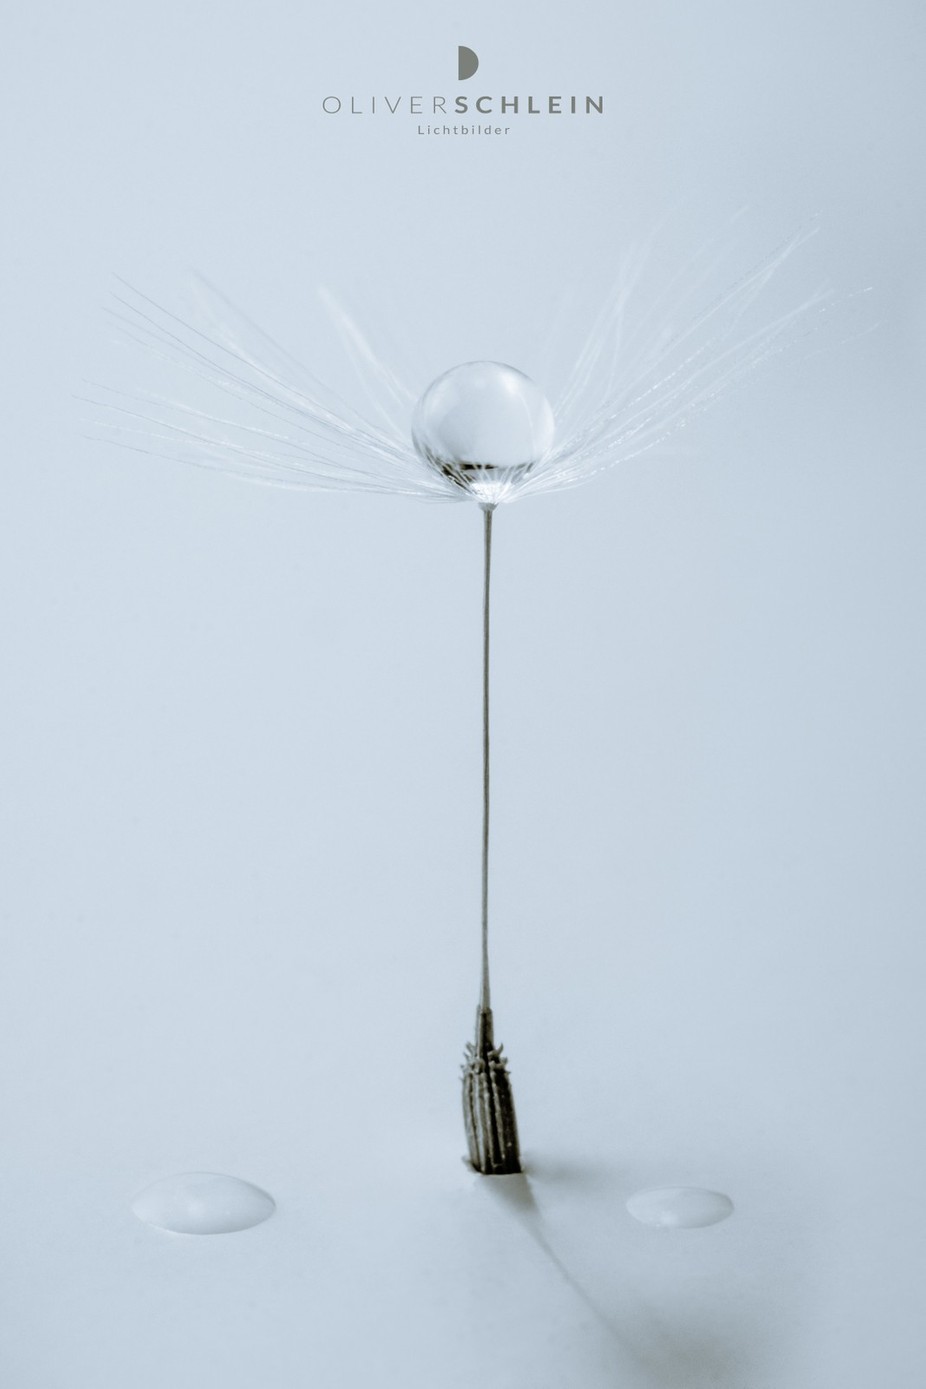 crystal clear mk2  by OliverSchleinLichtbilder - Macro Water Drops Photo Contest